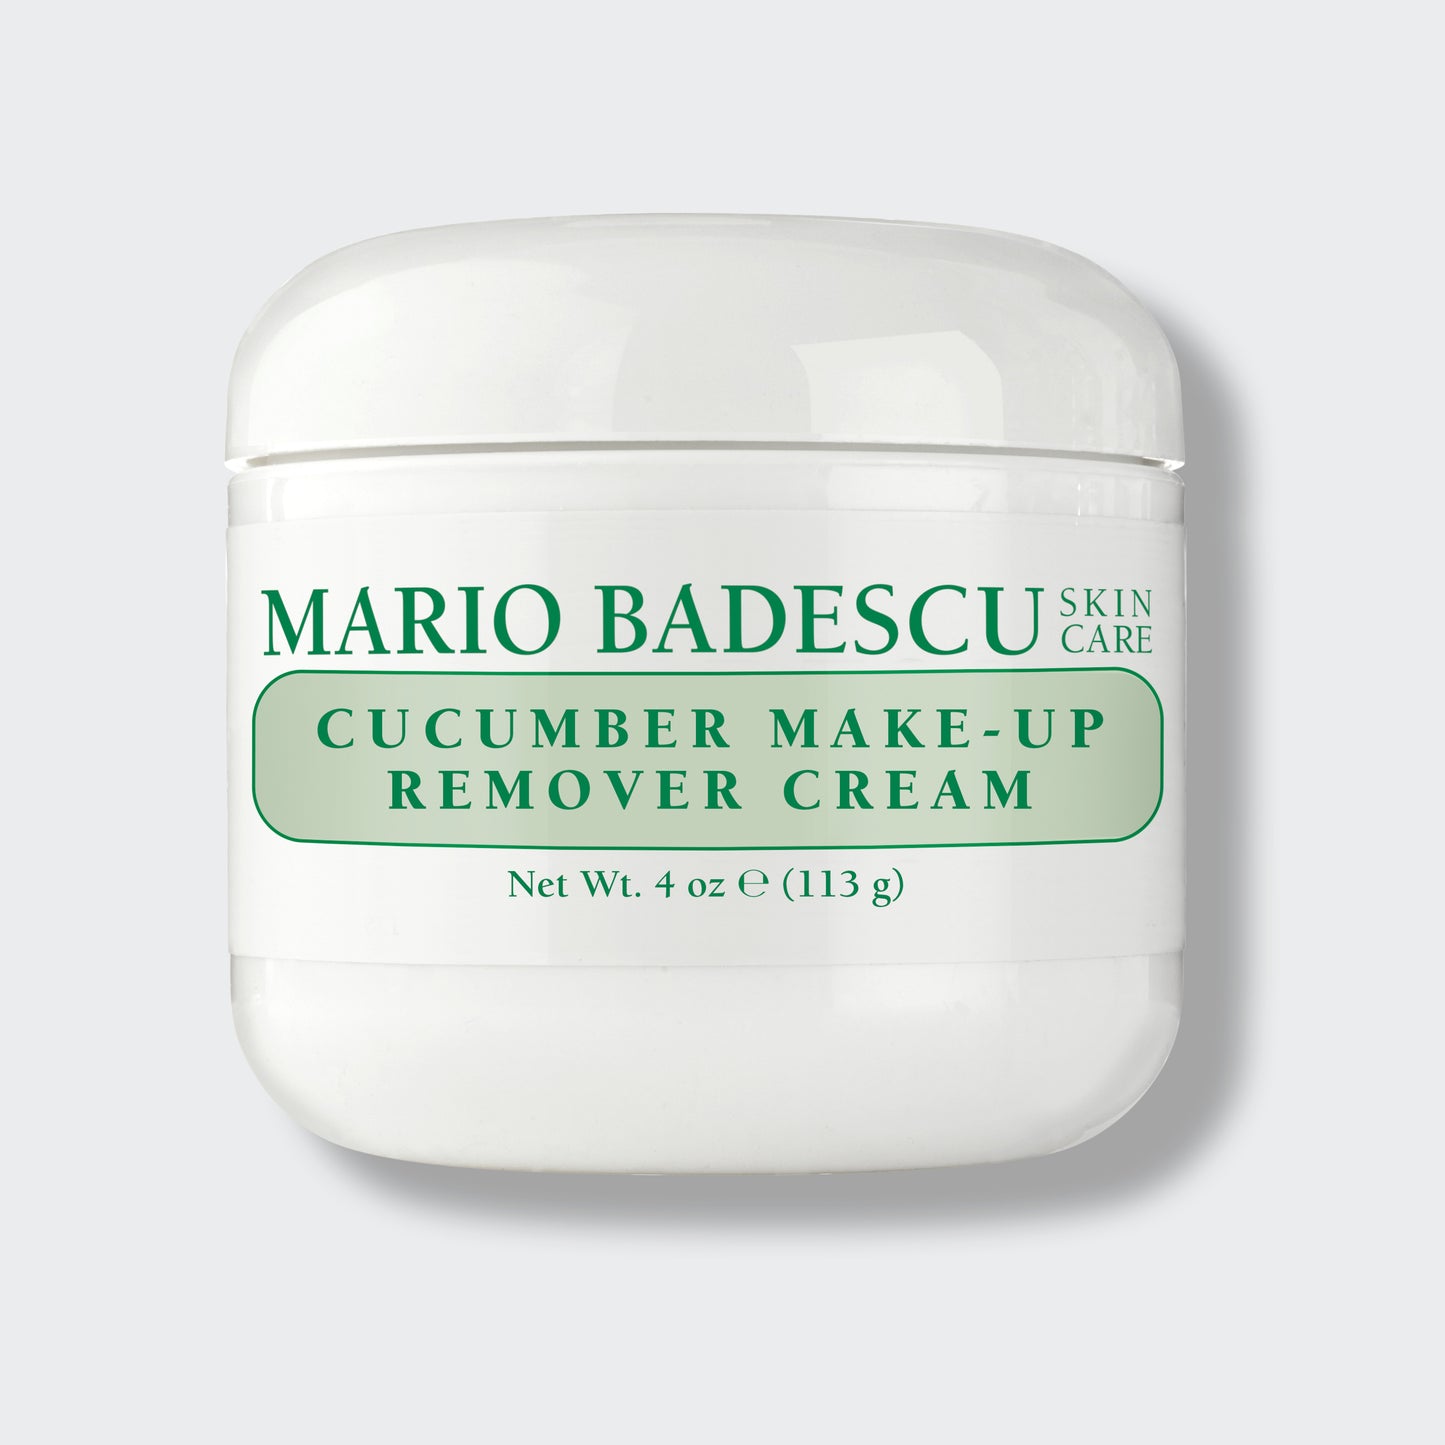 Cucumber Make-Up Remover Cream